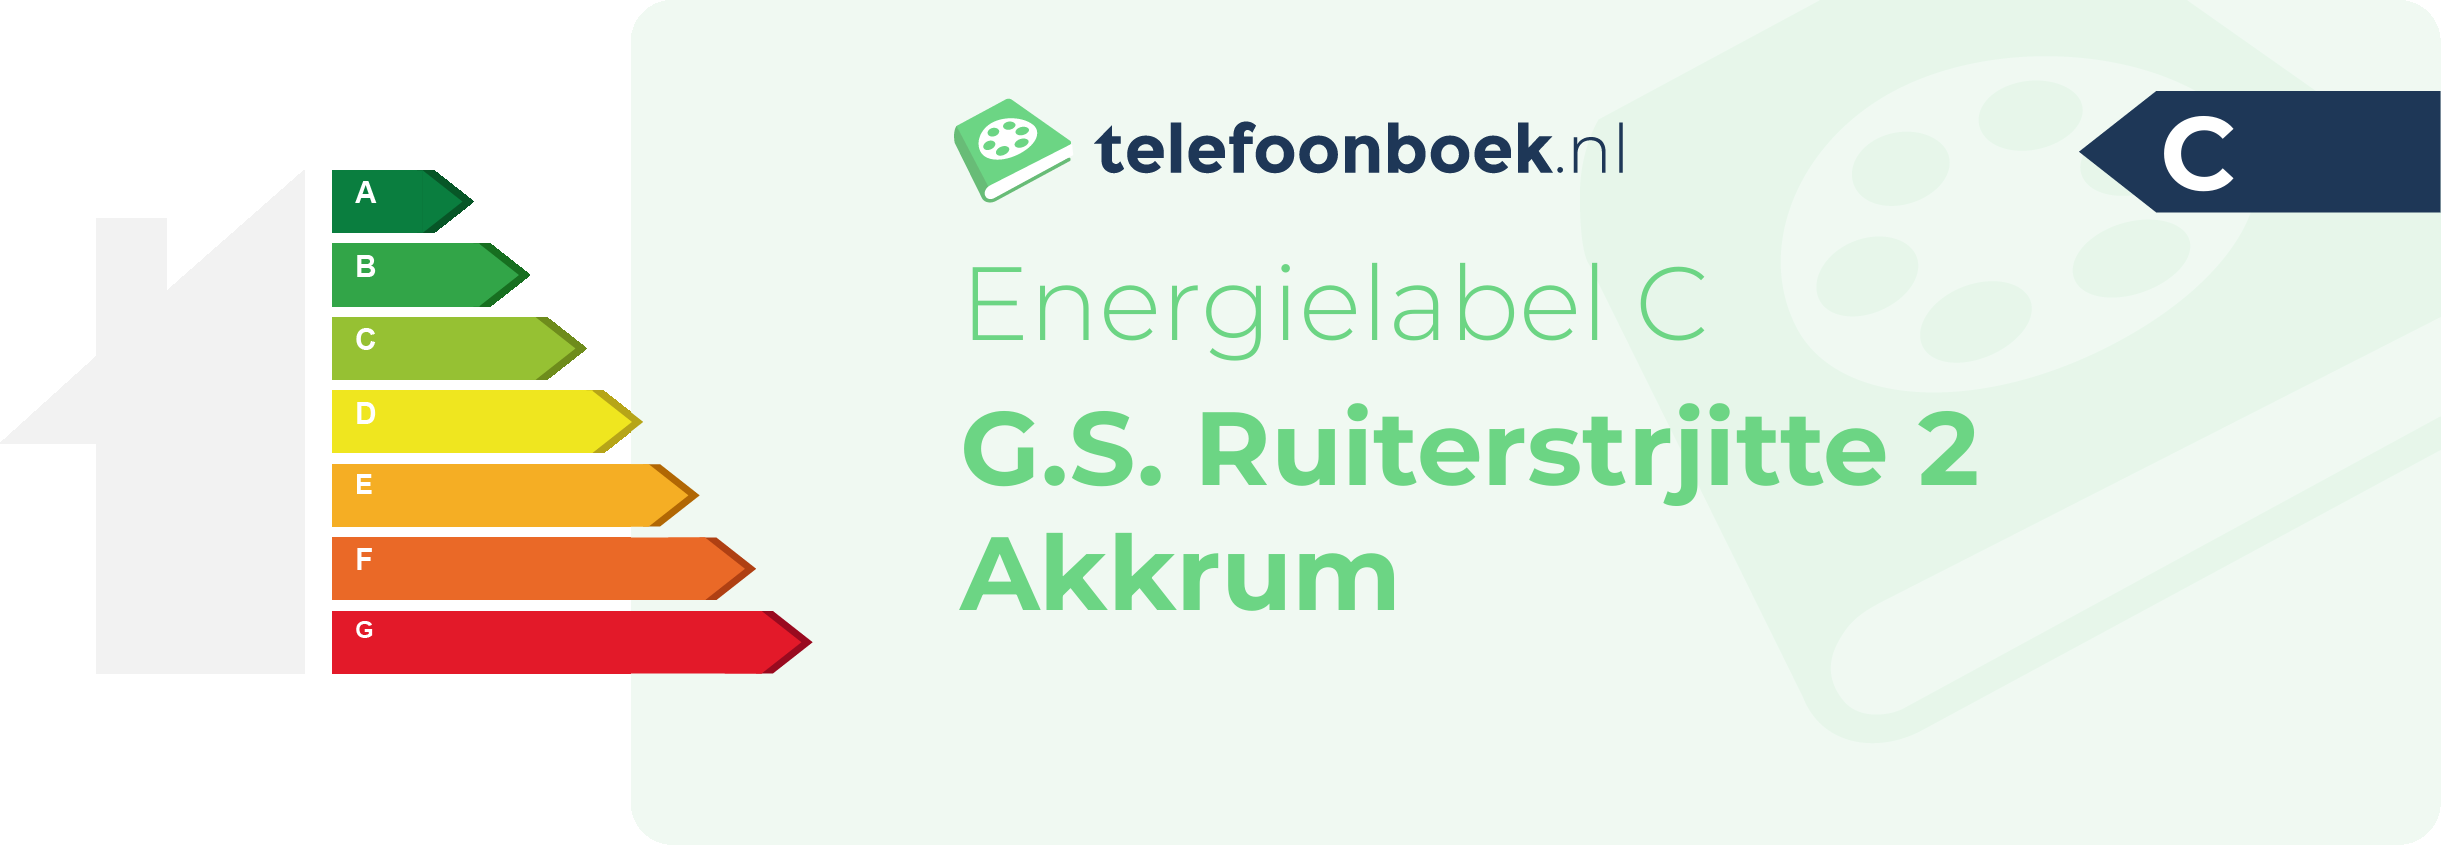 Energielabel G.S. Ruiterstrjitte 2 Akkrum